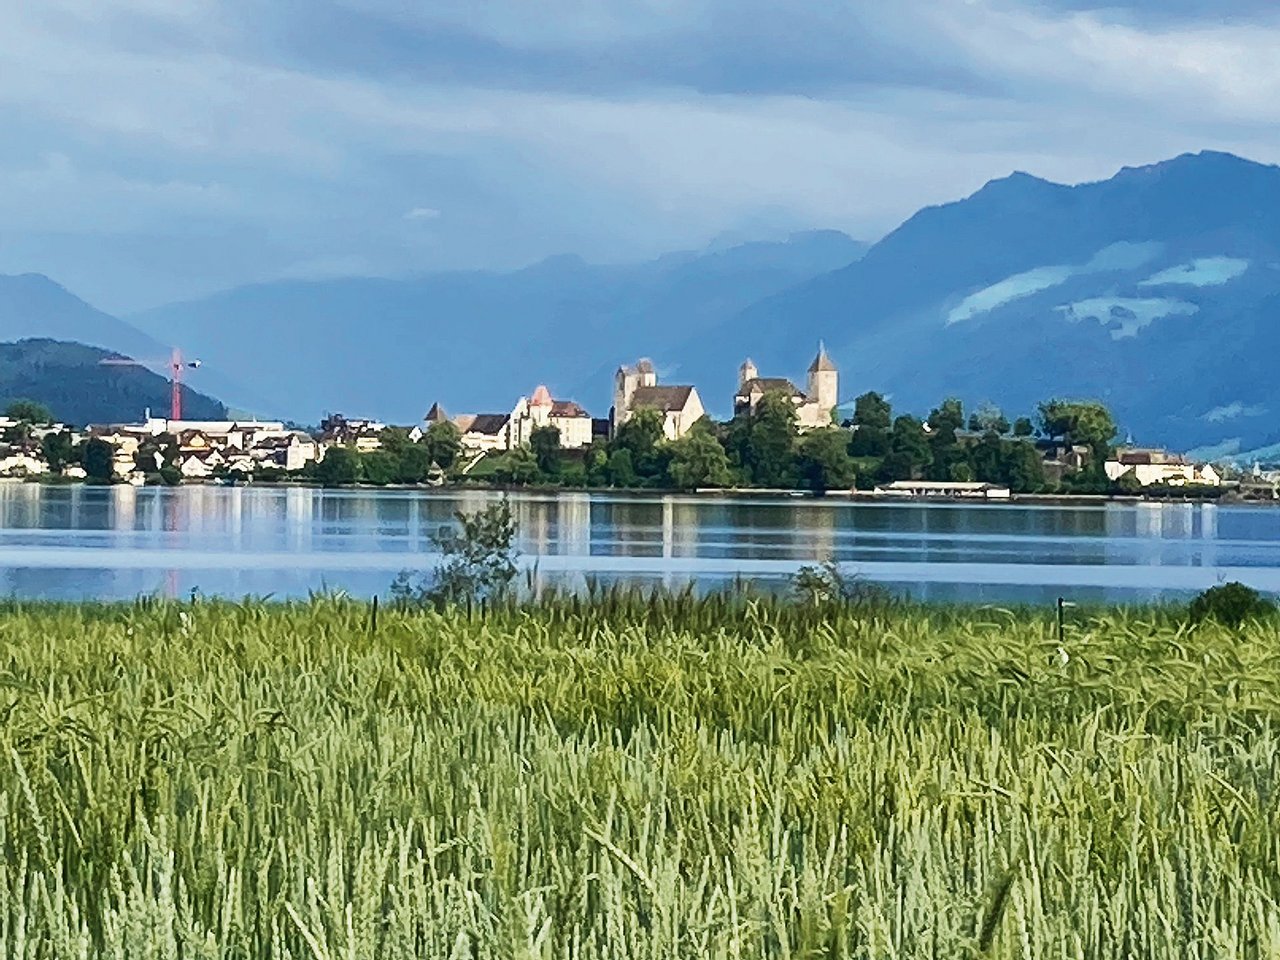 Arbeitsplatz mit aussergewöhnlichem Ambiente: Die Felder der Getreidezüchtung Peter Kunz liegen direkt am Ufer des Zürichsees, mit Blick auf die Stadt Rapperswil samt Schloss.